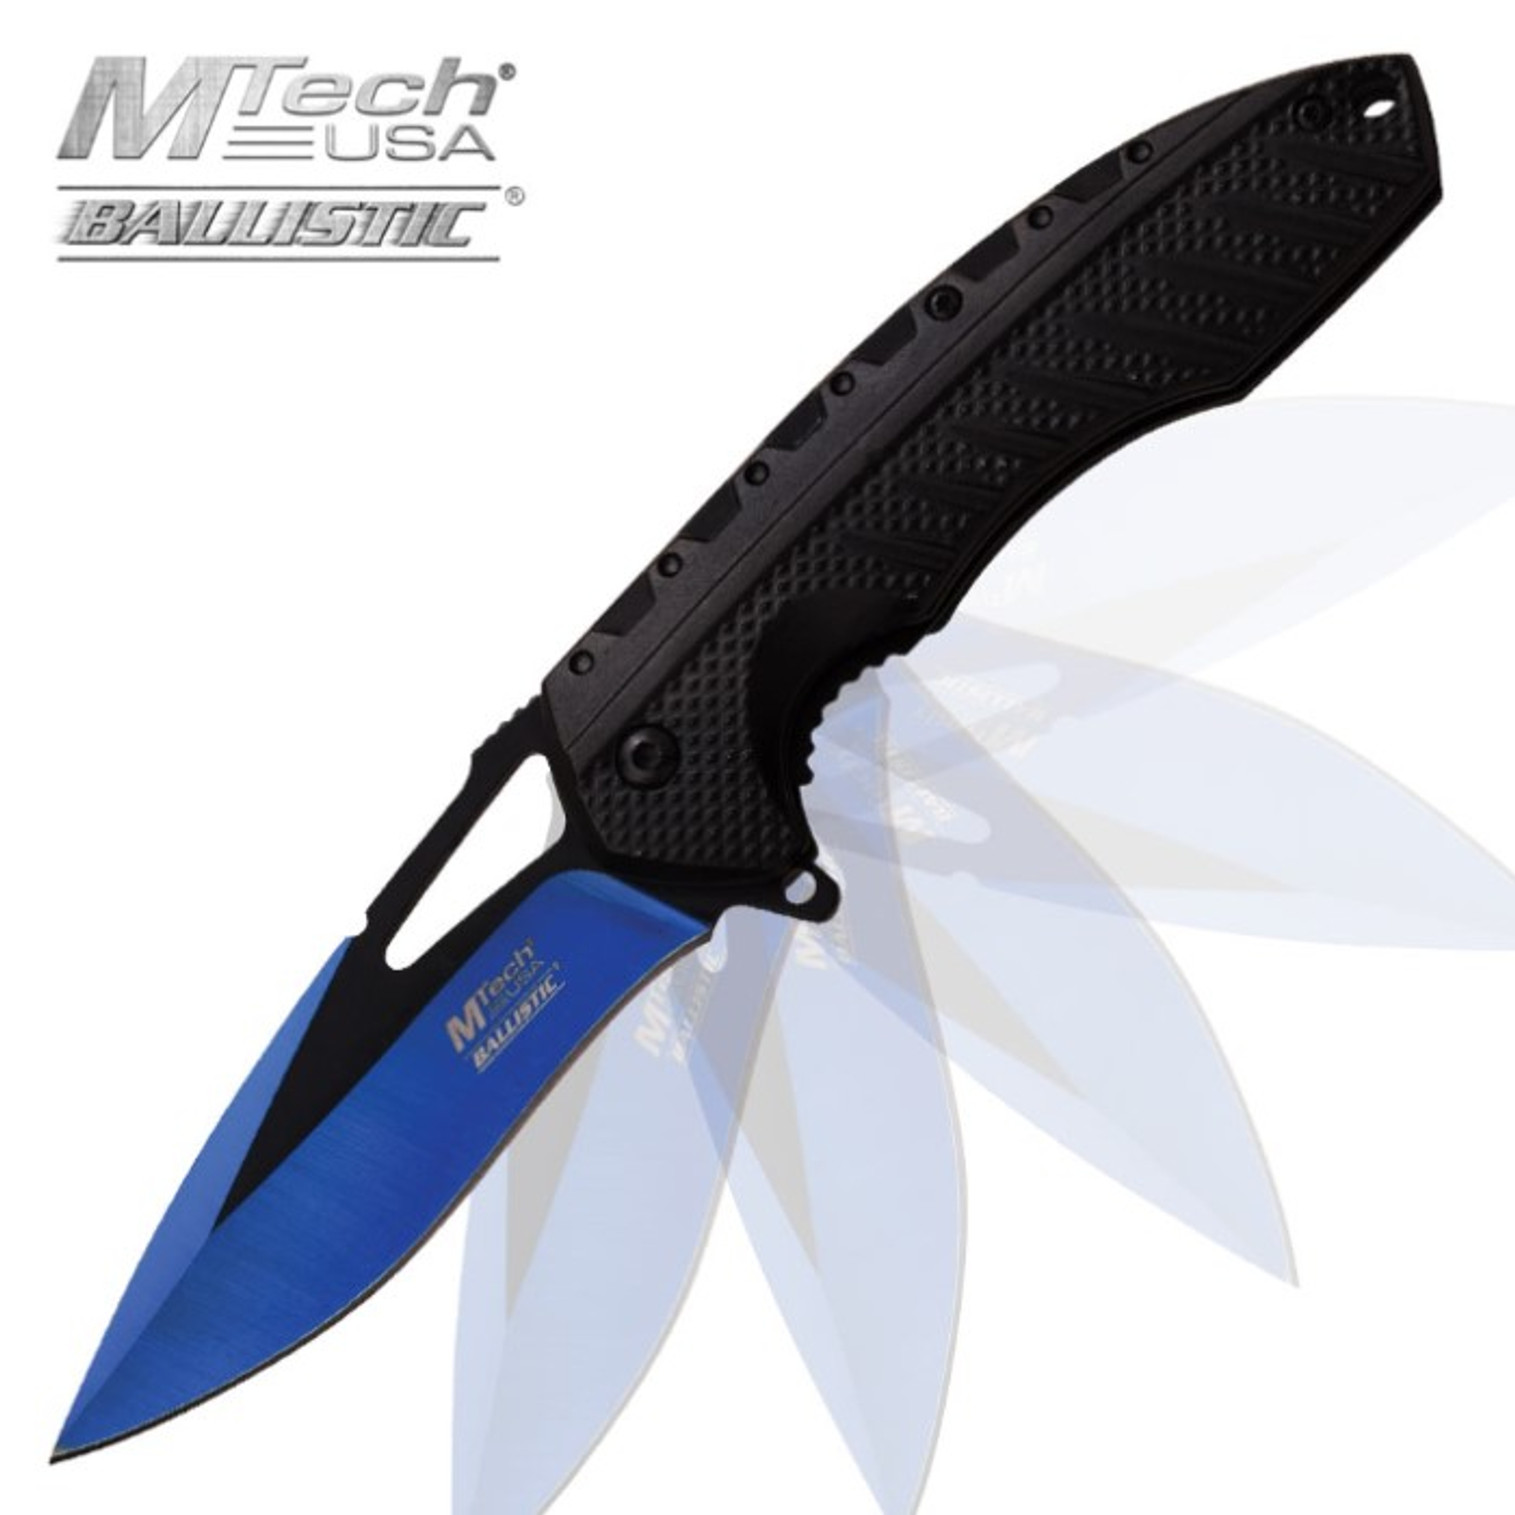 MTech Spring Assisted Blue/Black Blade Knife